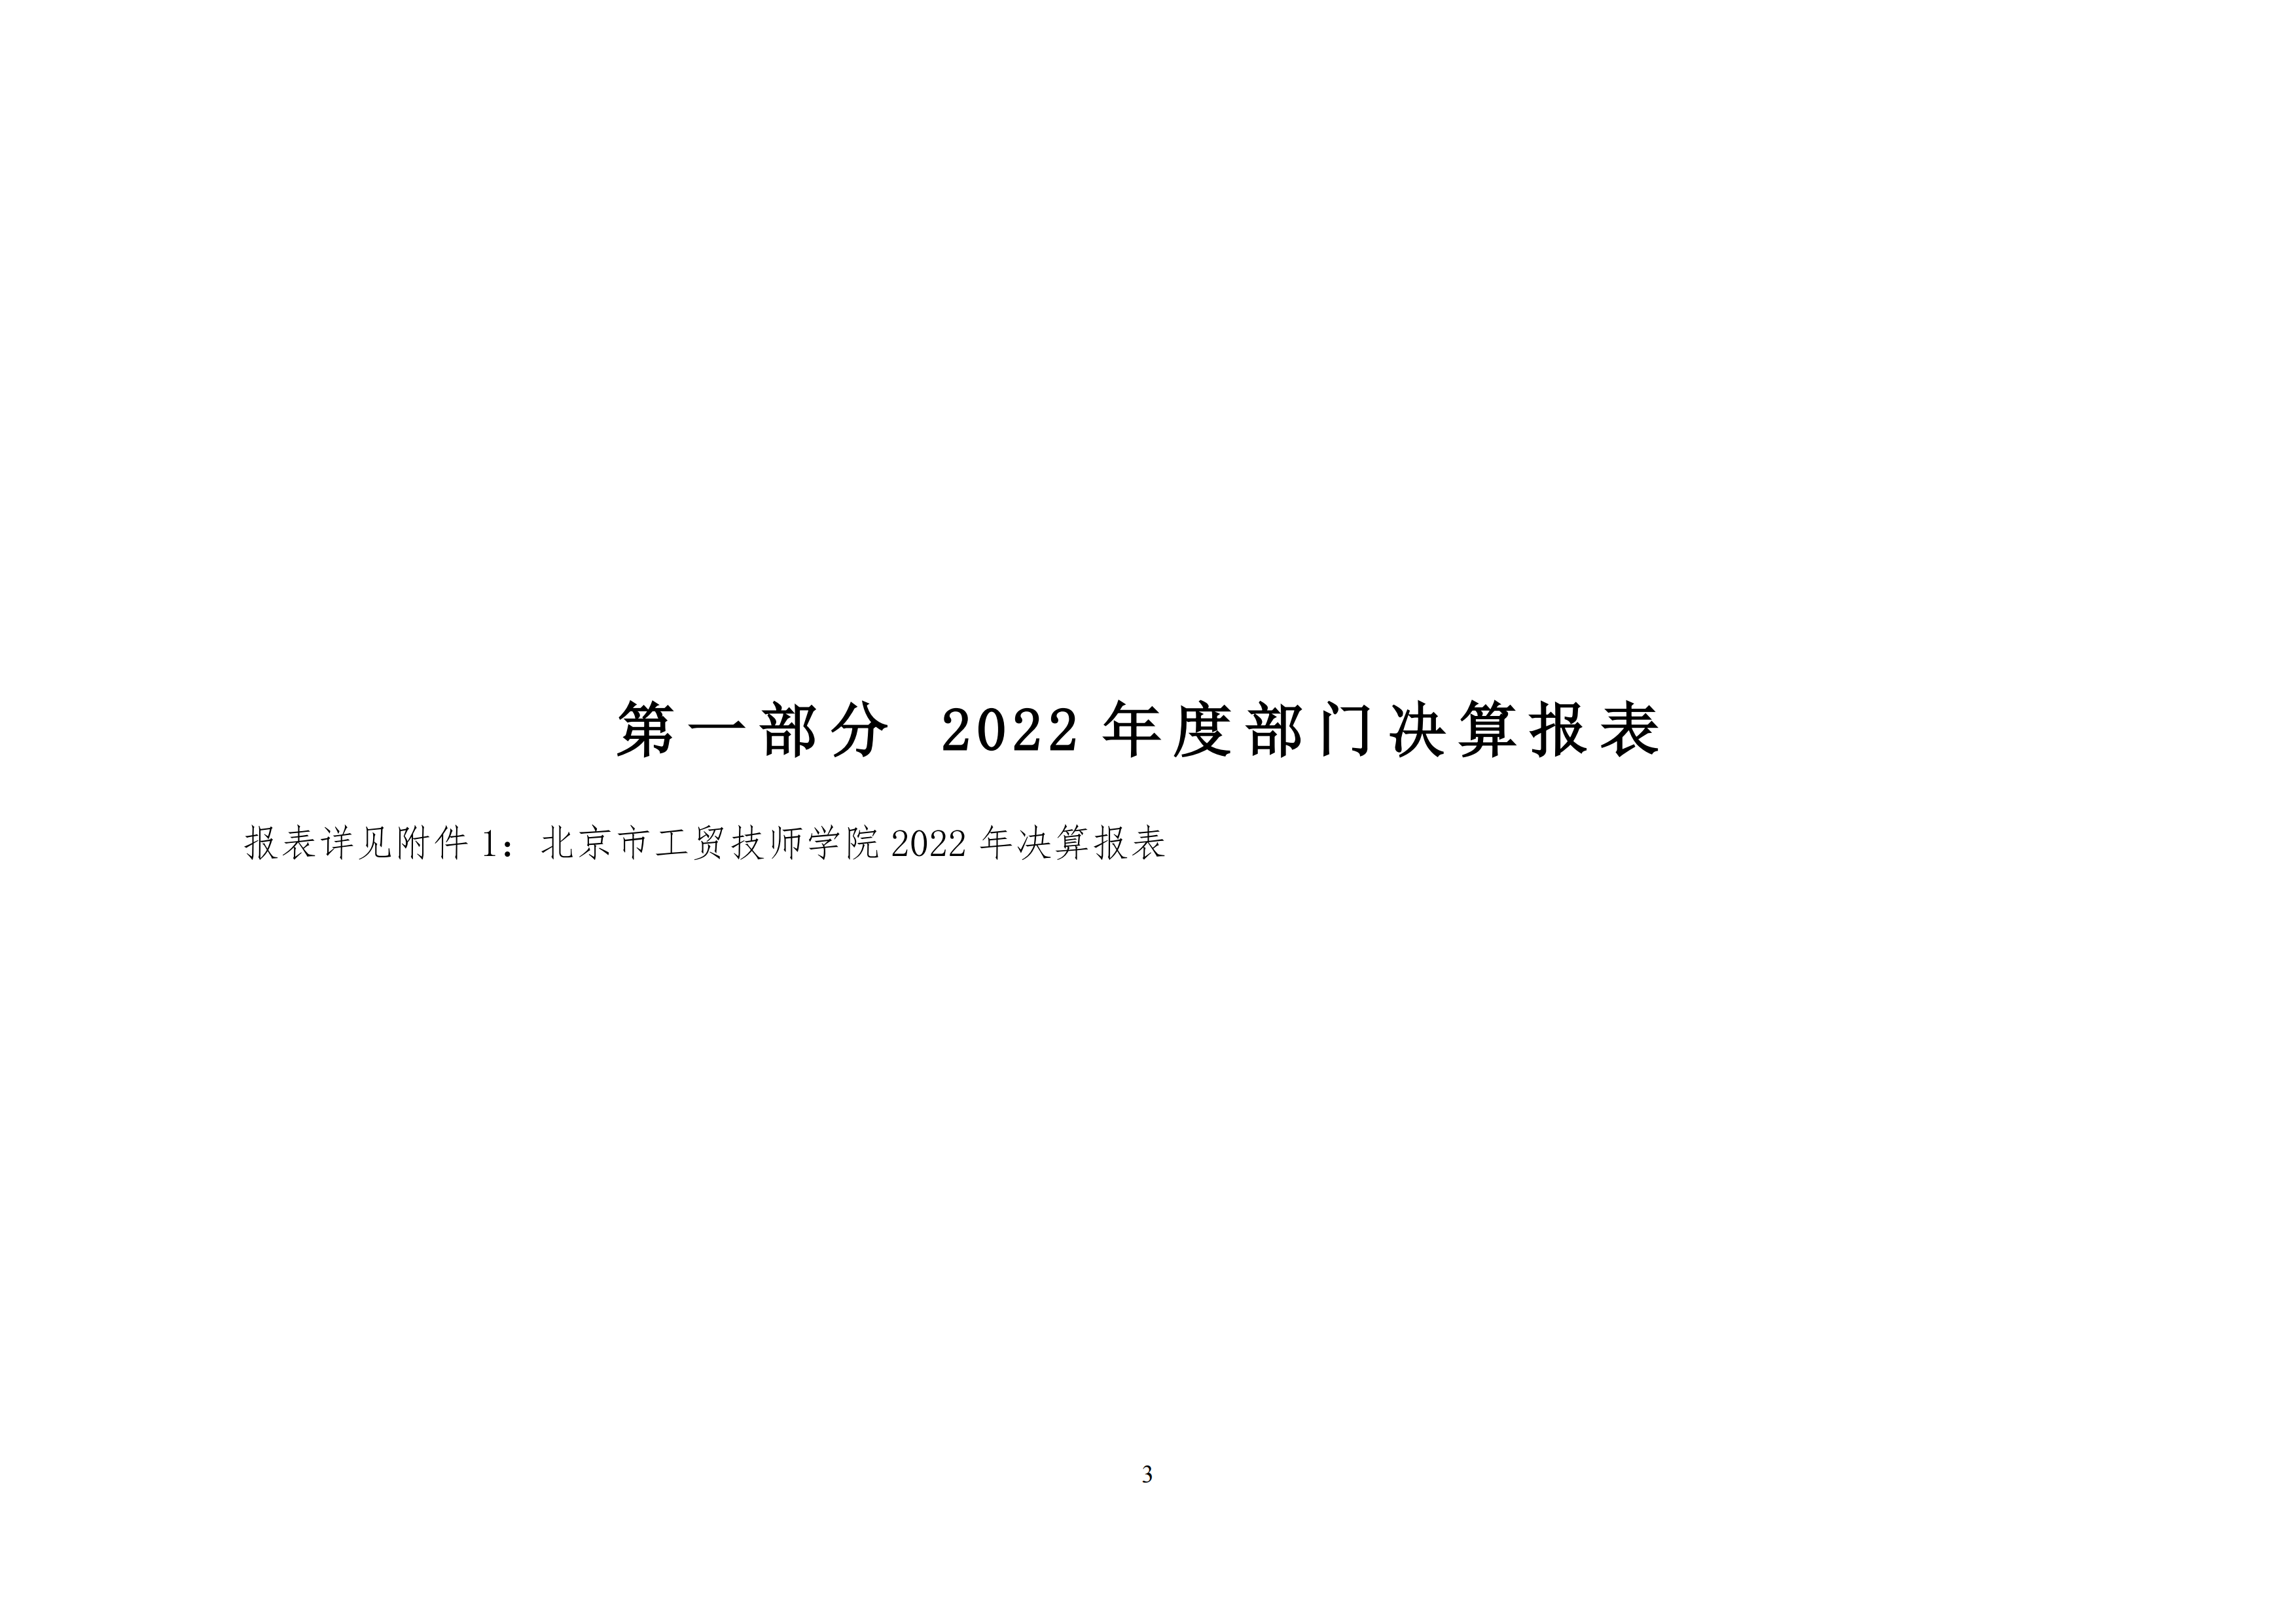 北京市工贸技师学院2022年度部门决算公开_02.png